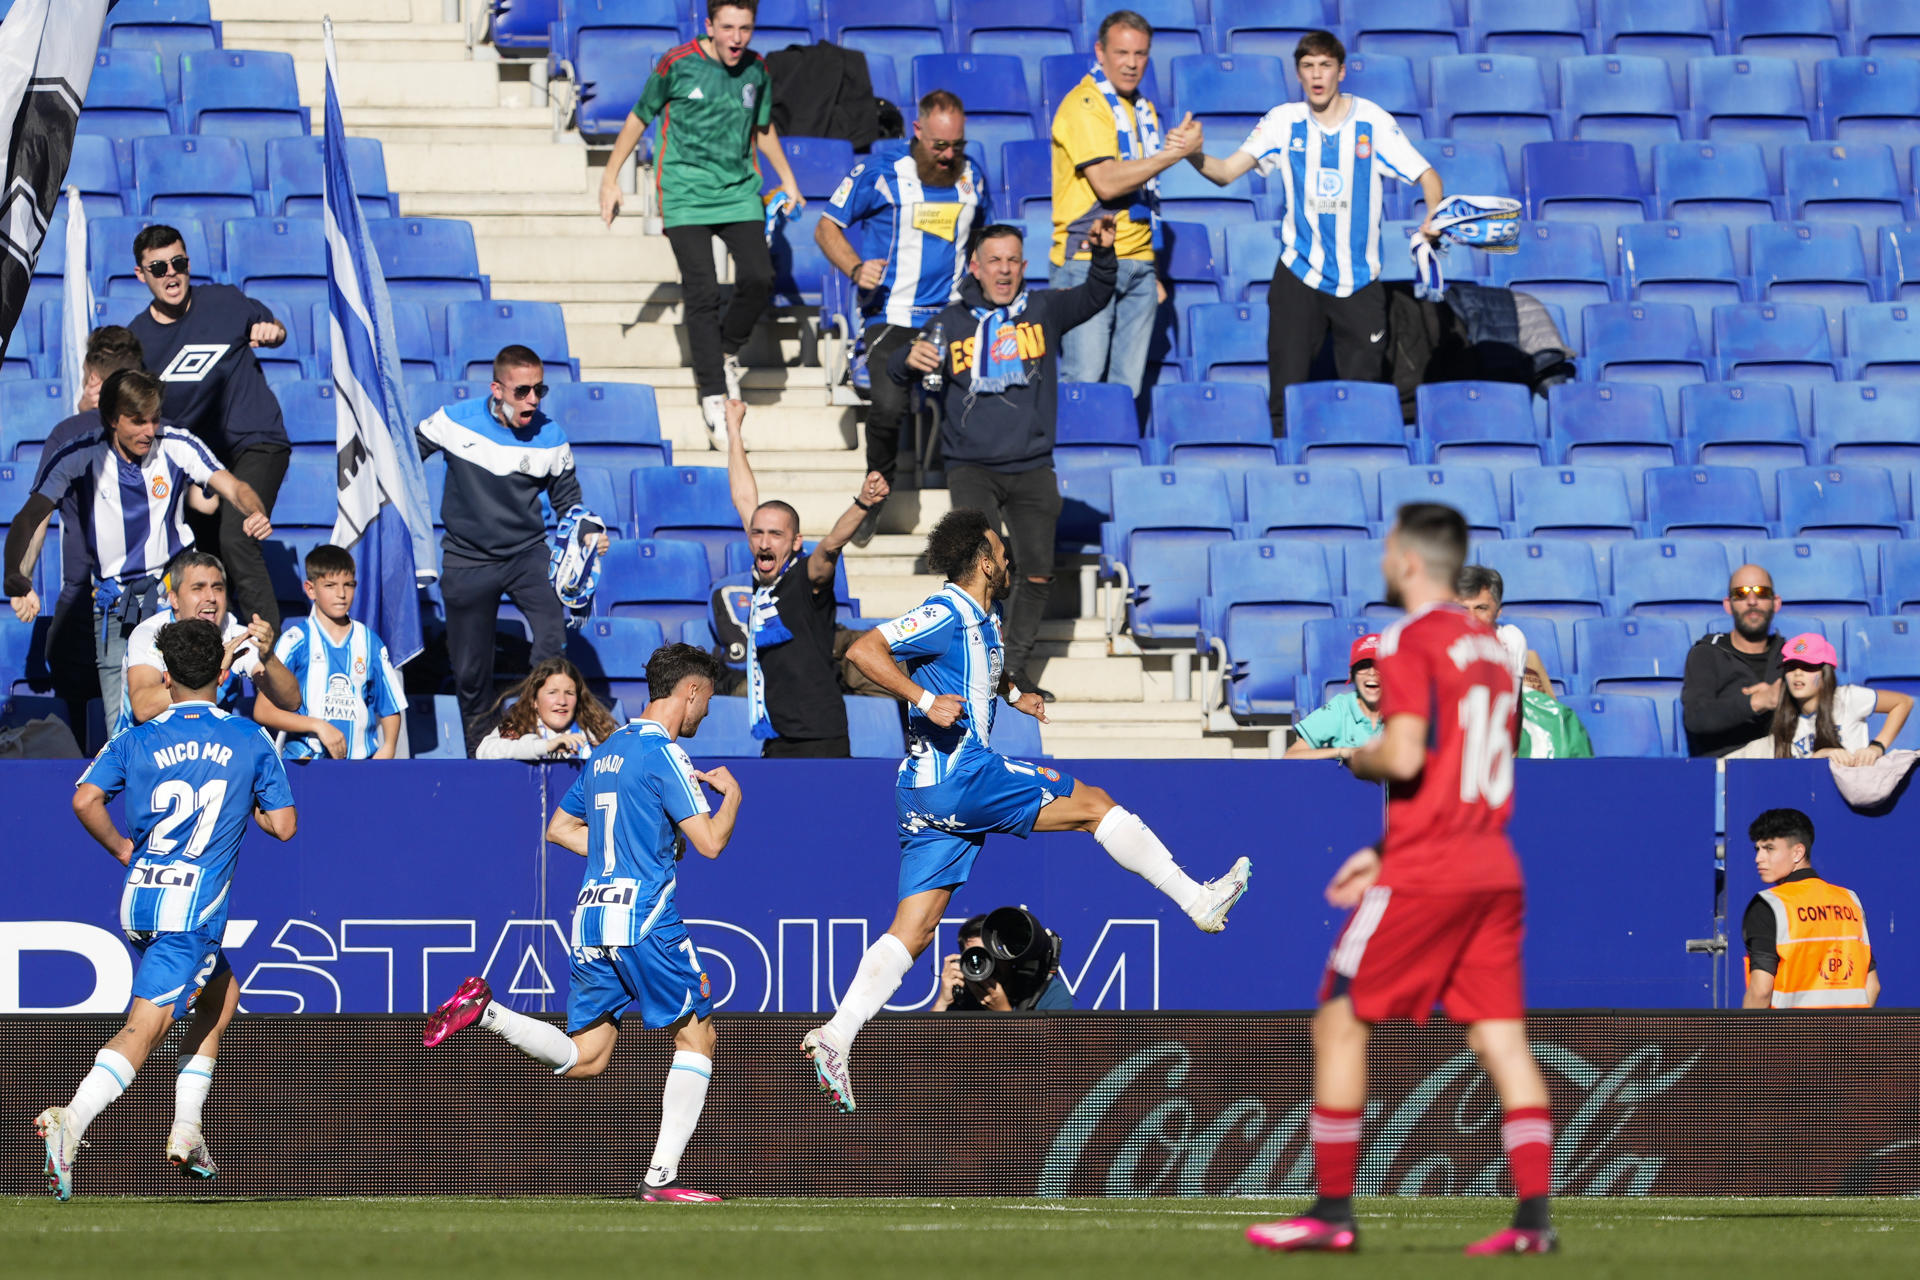 El delantero del Espanyol Martin Braithwaite (3i) celebra tras marcar gol durante el partido de primera división de LaLiga que enfrentó al Espanyol y el Osasuna en el estadio Cornellà-El Prat, este sábado. EFE/ Alejandro García